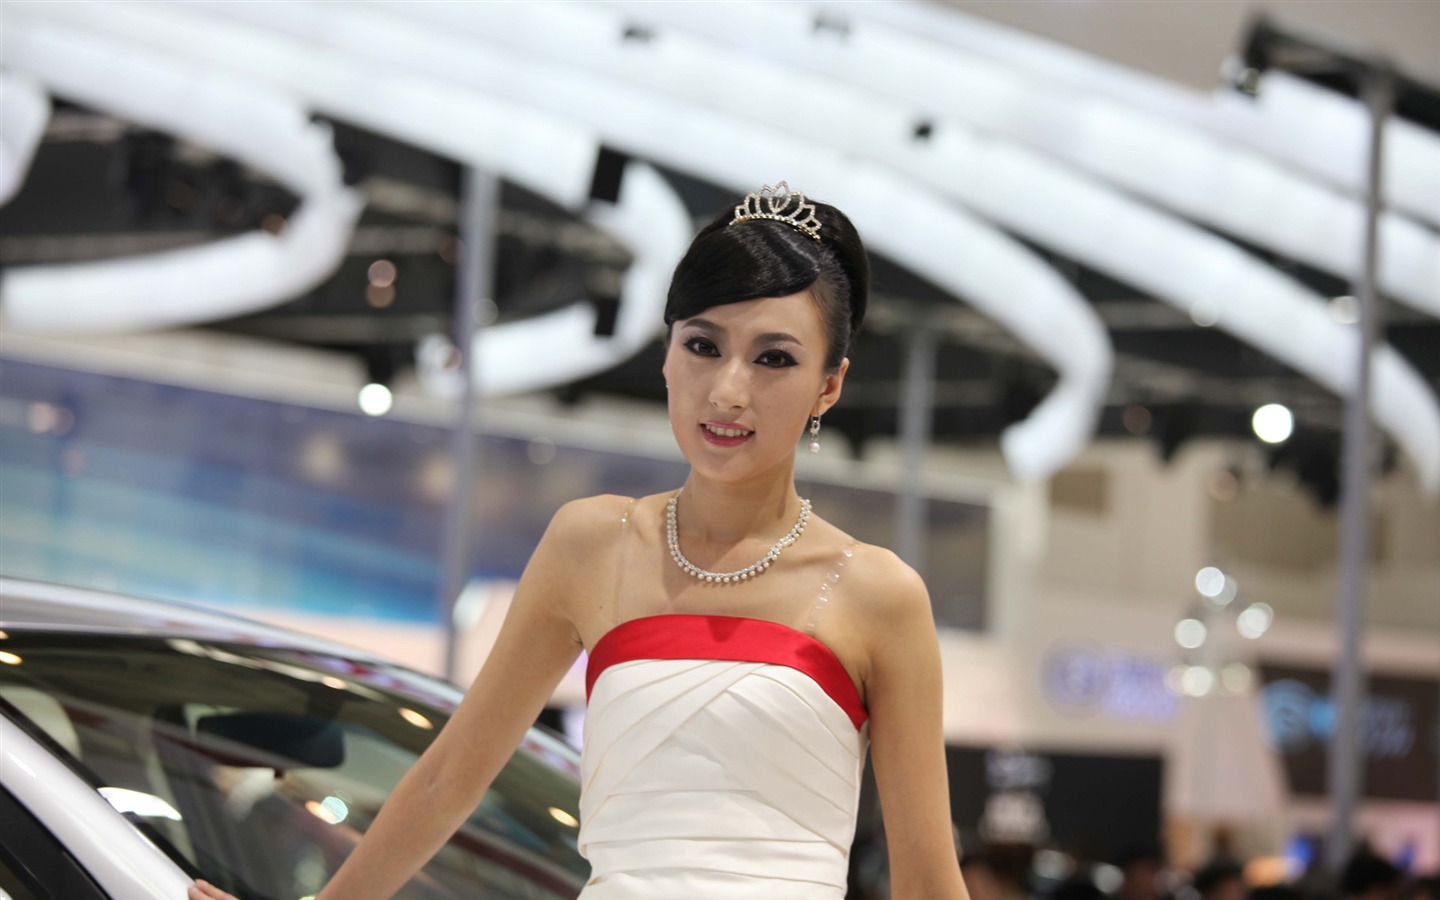 2010 v Pekingu Mezinárodním autosalonu krása (1) (vítr honí mraky práce) #27 - 1440x900